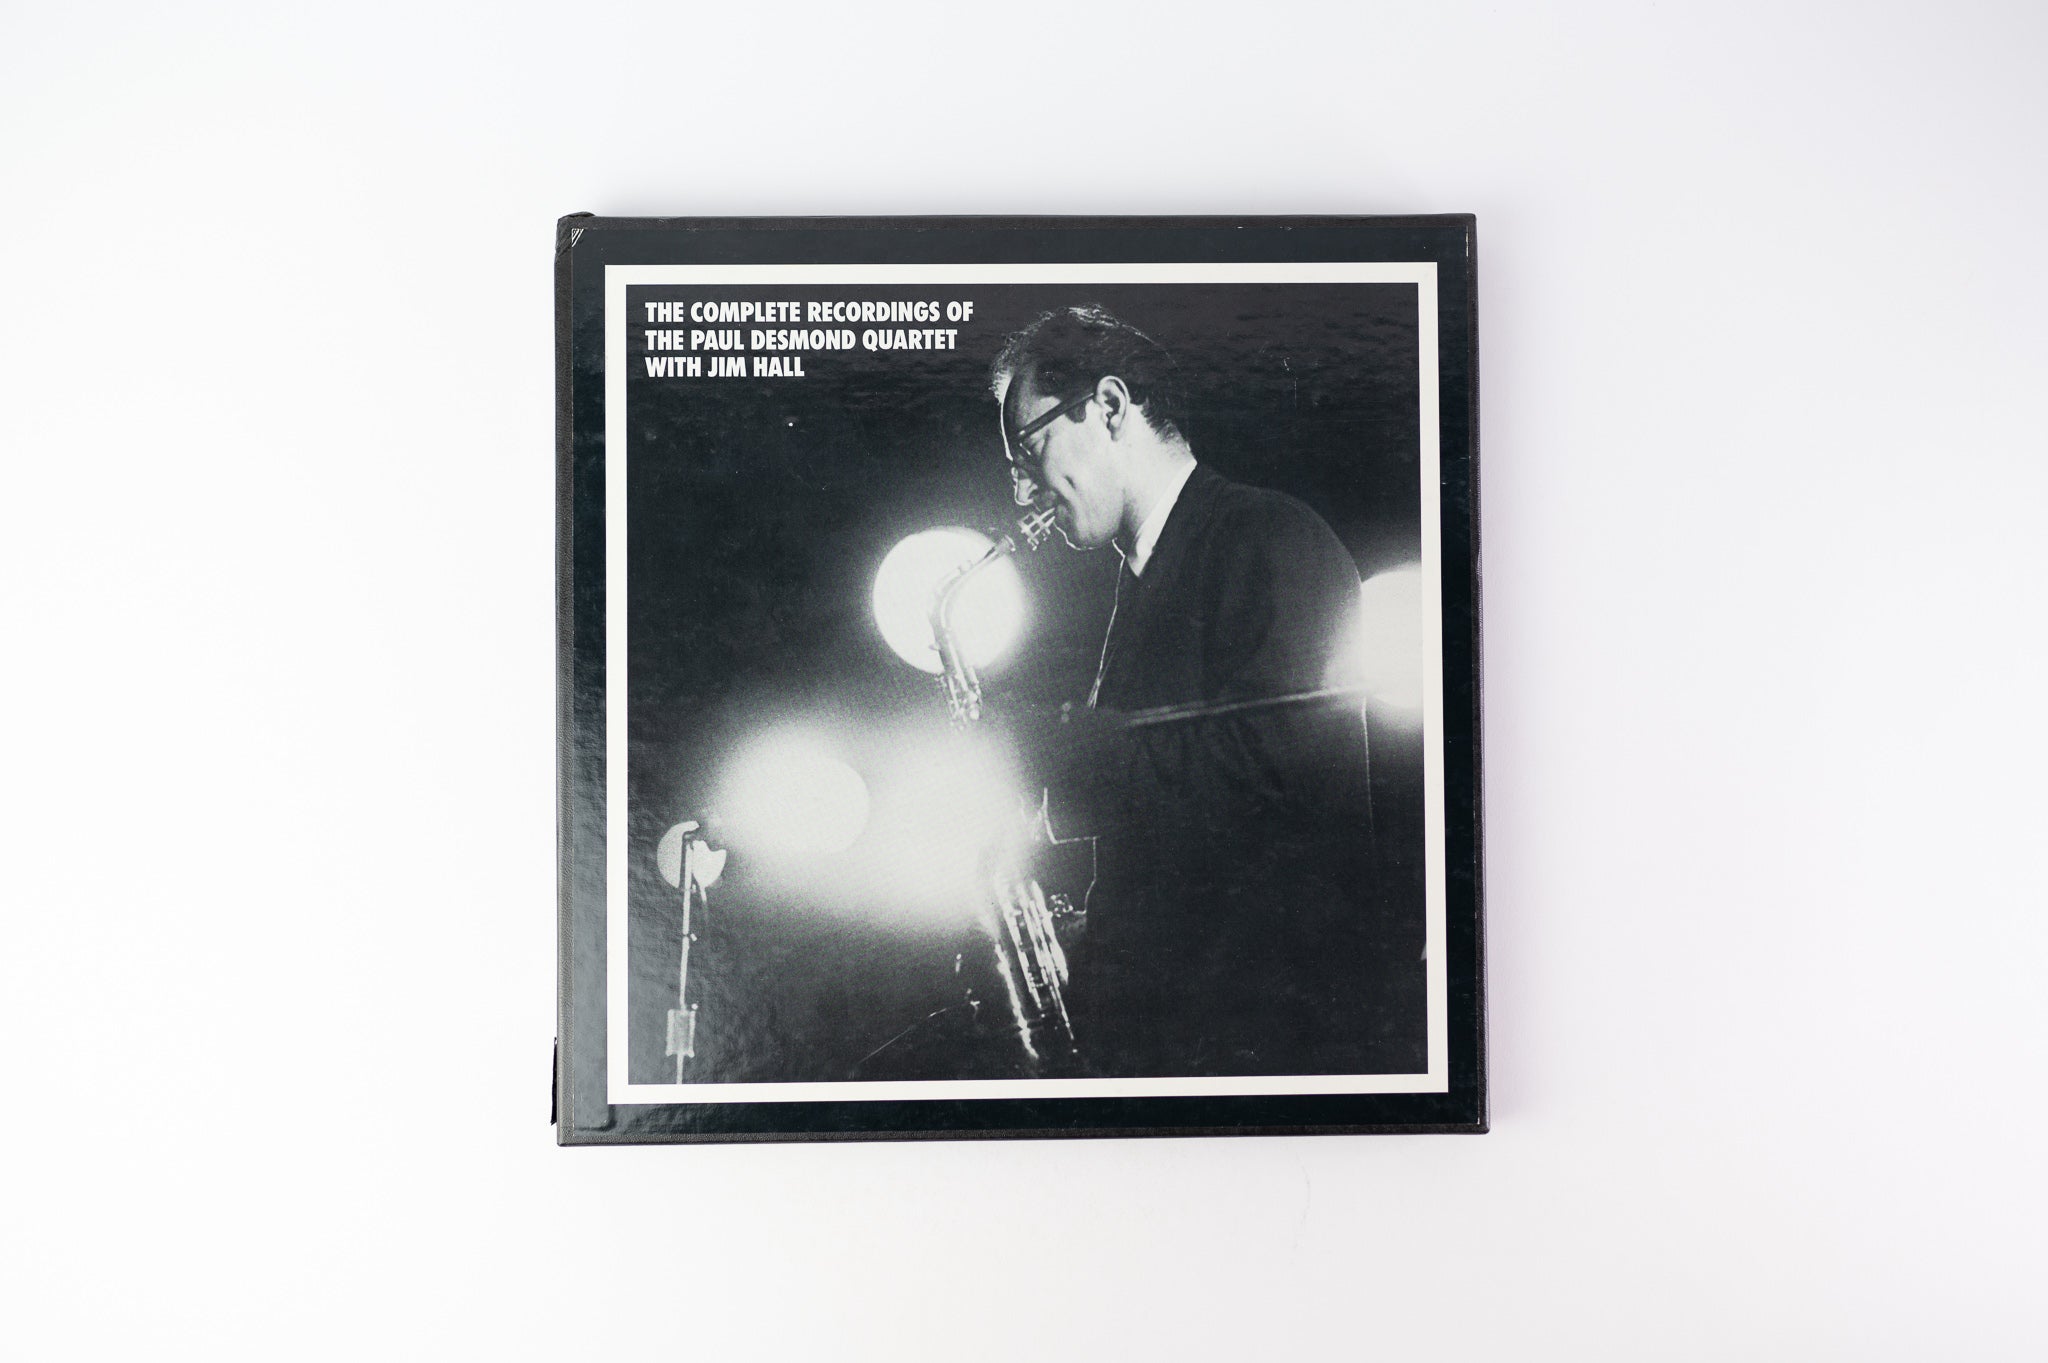 The Paul Desmond Quartet - The Complete Recordings Of The Paul Desmond Quartet With Jim Hall on Mosaic Limited Boxset